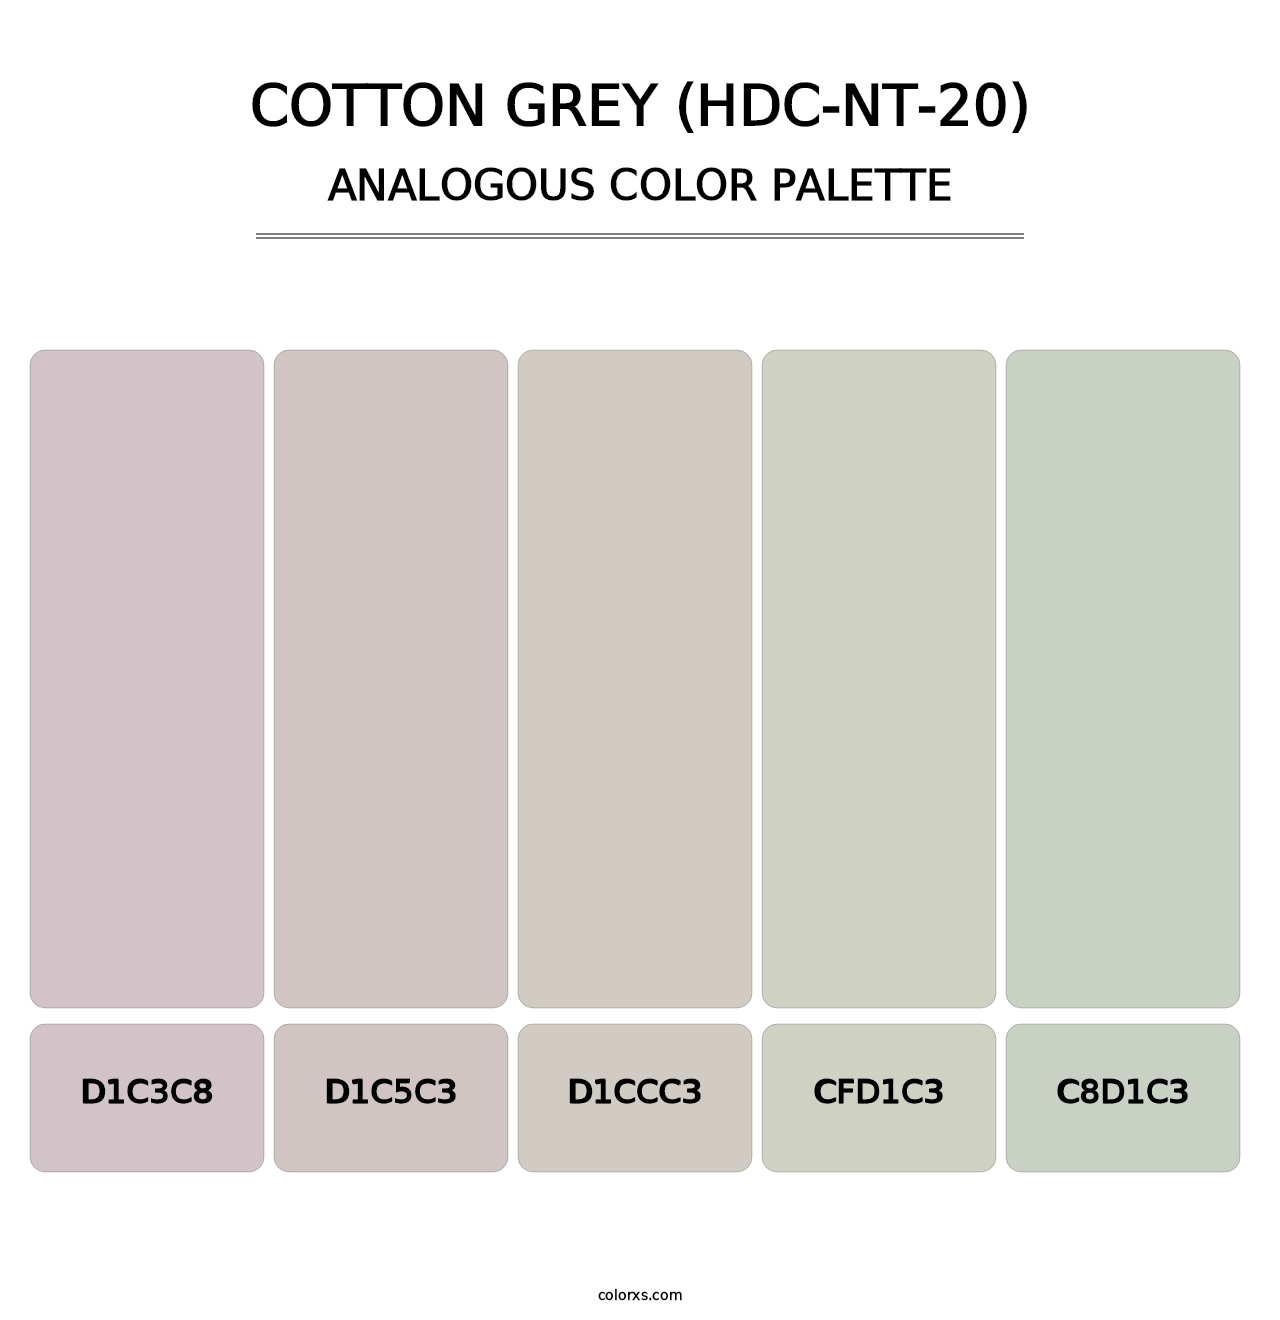 Cotton Grey (HDC-NT-20) - Analogous Color Palette